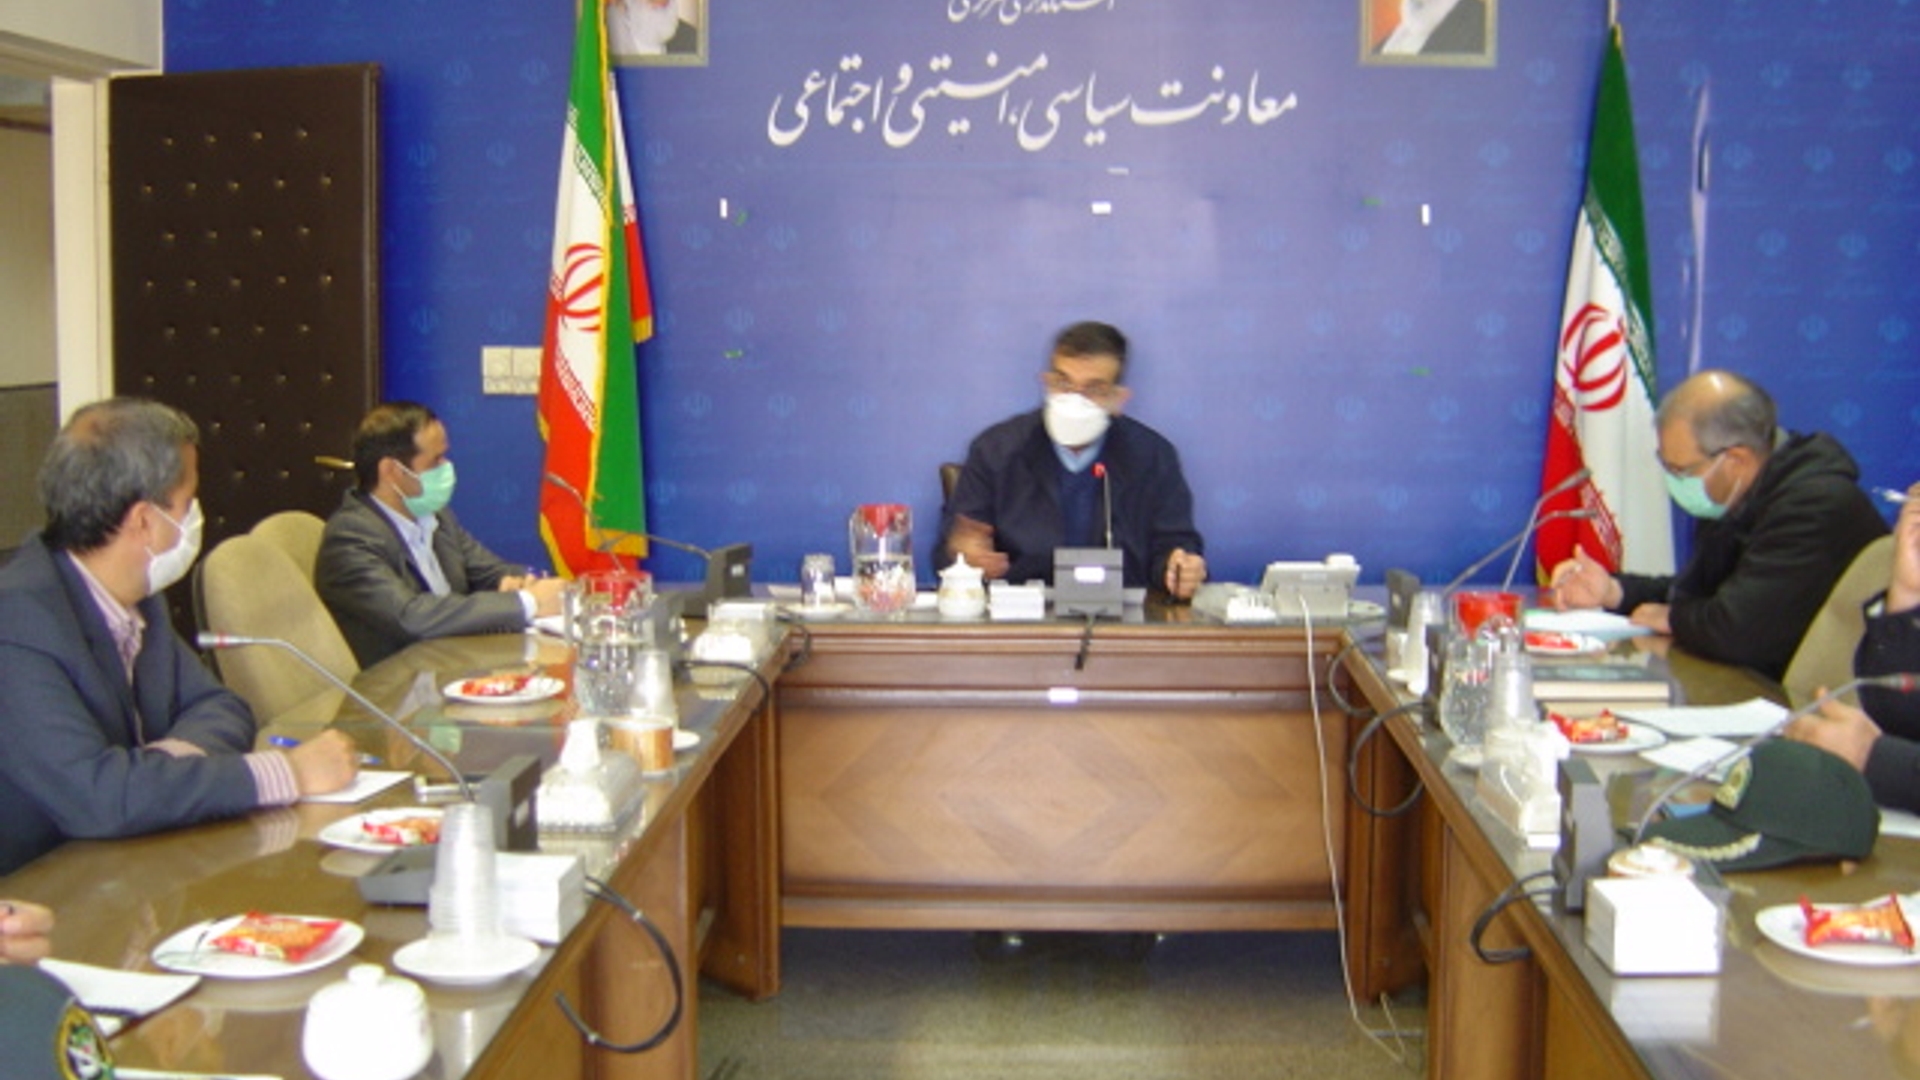 برگزاری جلسه کمیسیون حفاظت از اماکن و تاسیسات طبقه بندی شده و کارگروه امنیت و دفاع استان مورخ 1400-12-21